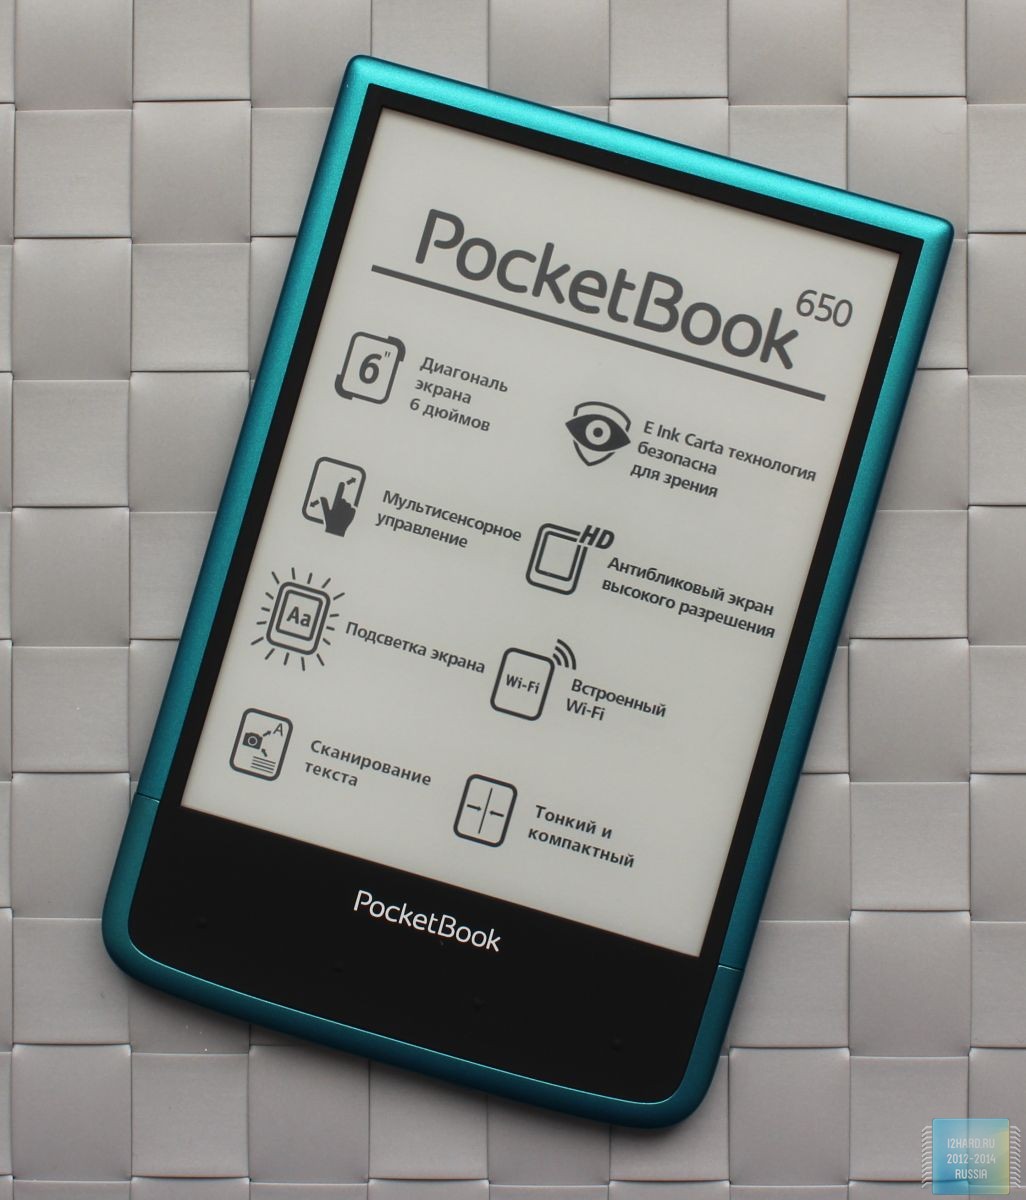 Pocketbook 650